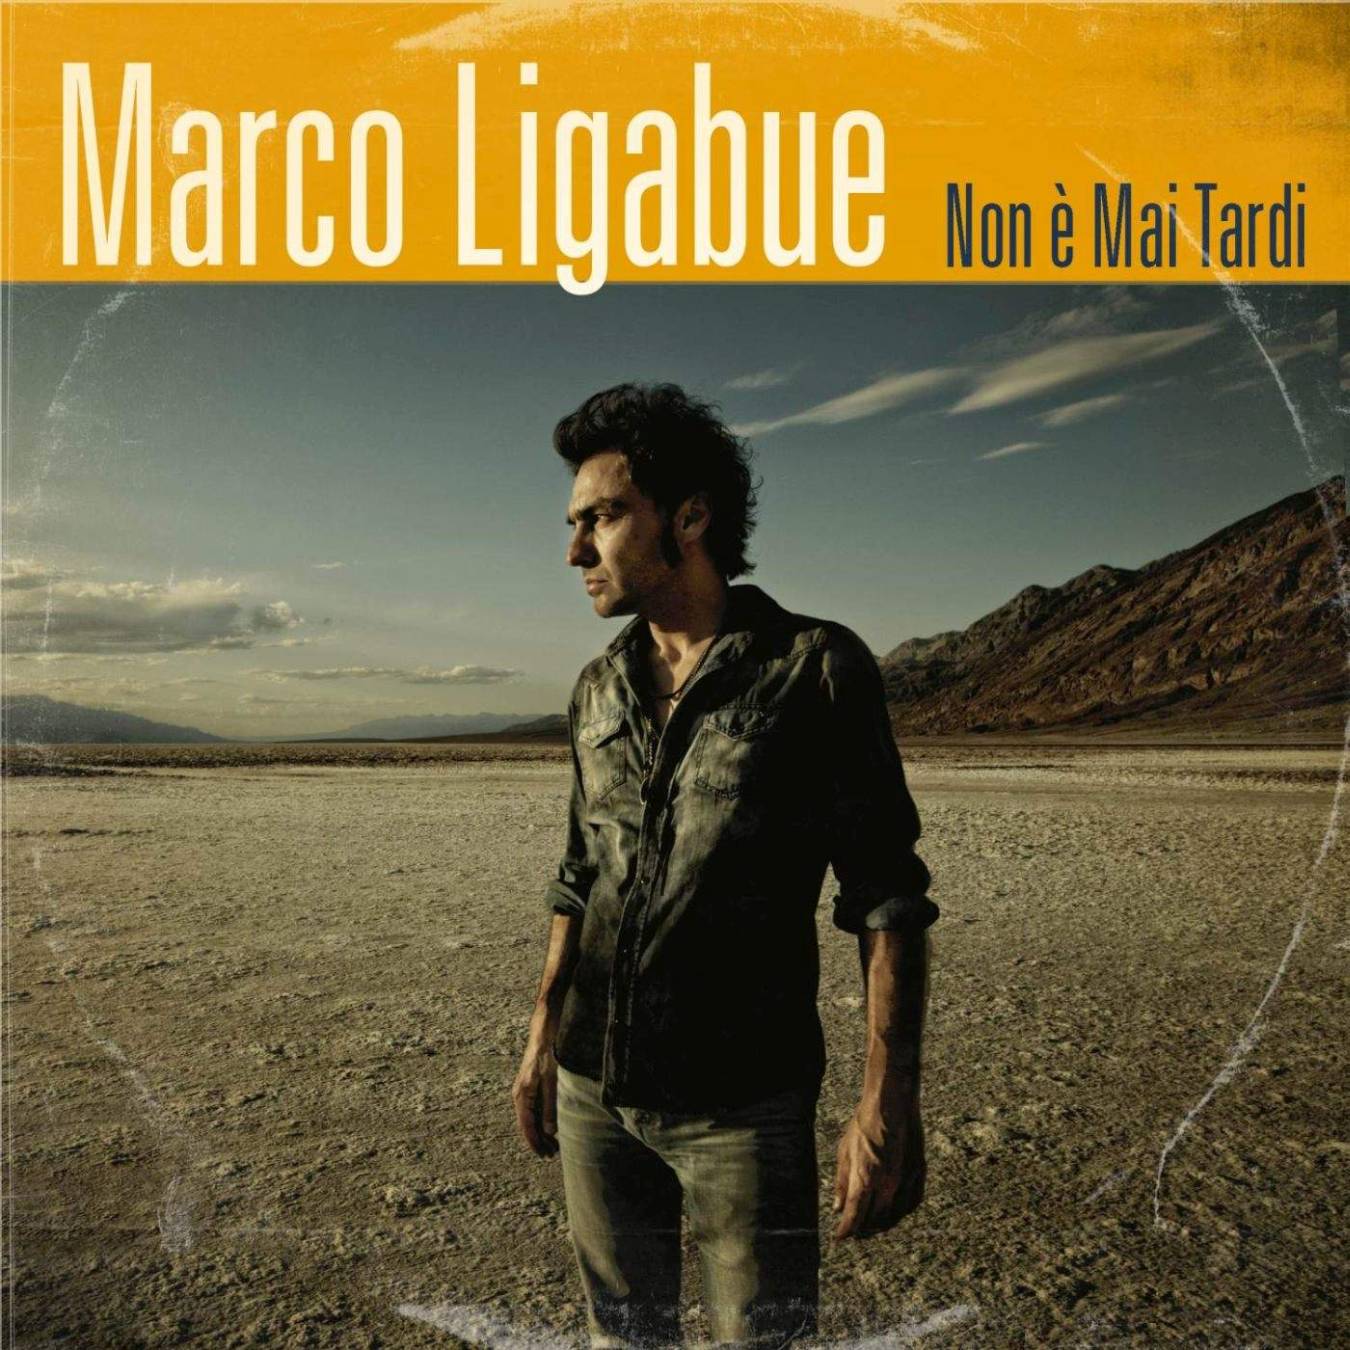 Marco Ligabue: è online “Non è mai tardi”, il nuovo singolo!